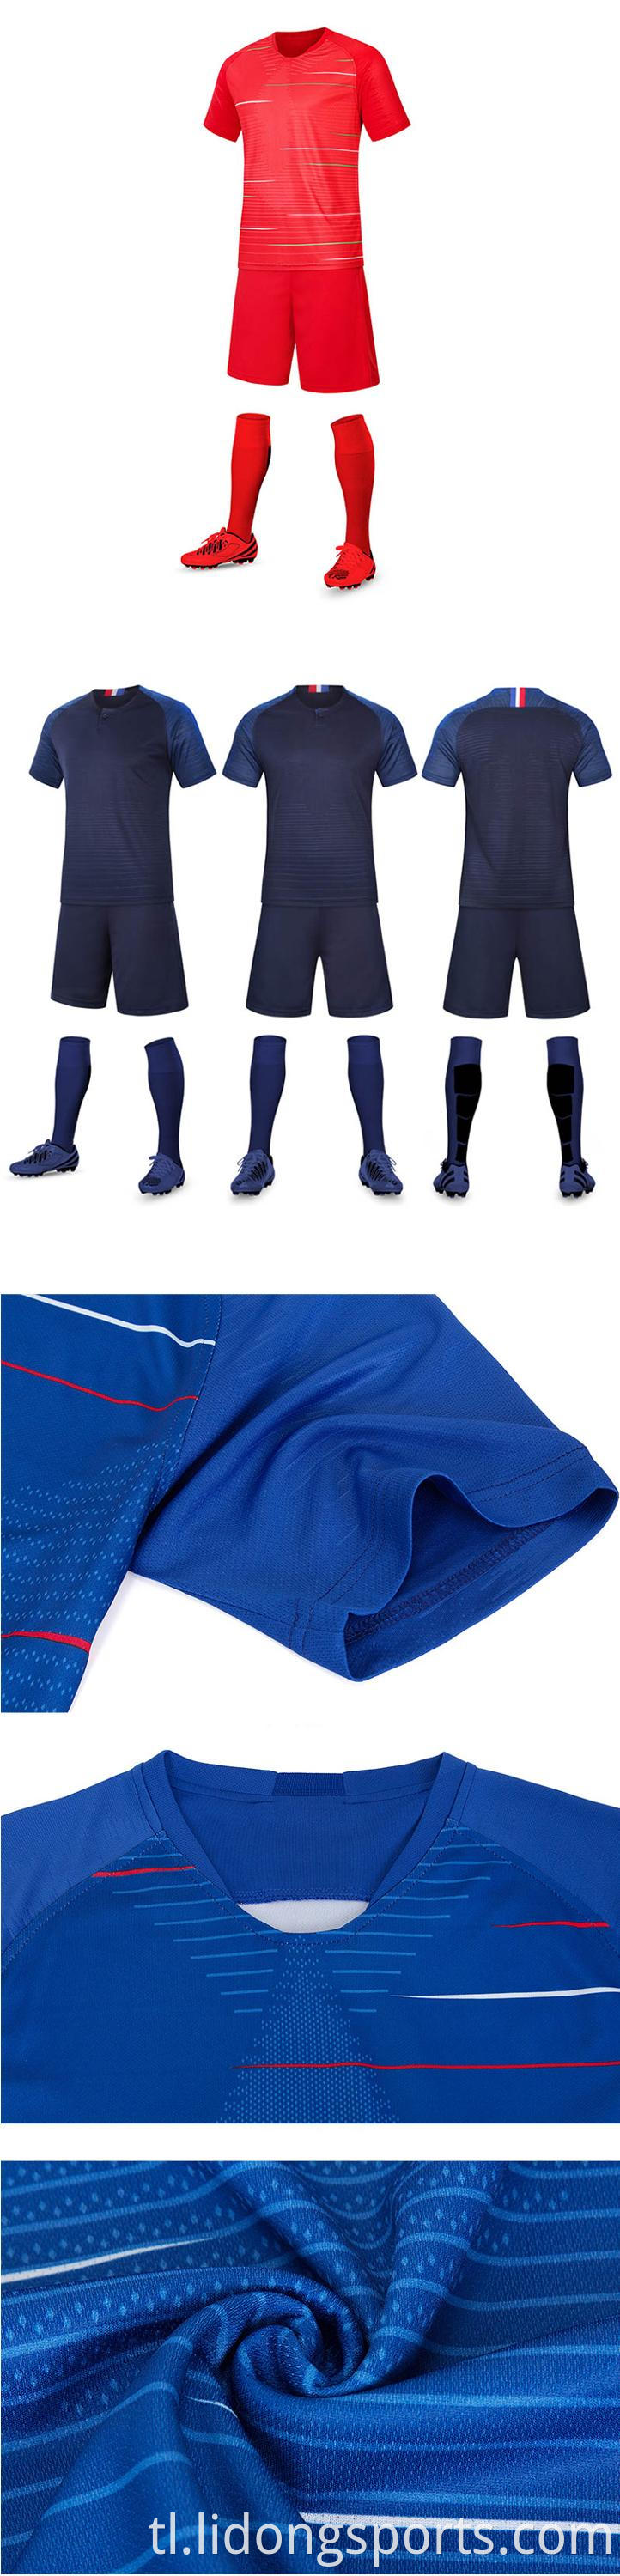 2021 pasadyang sports jersey bagong modelo ng soccer magsuot ng t-shirt football jersey na nakatakda sa pagbebenta